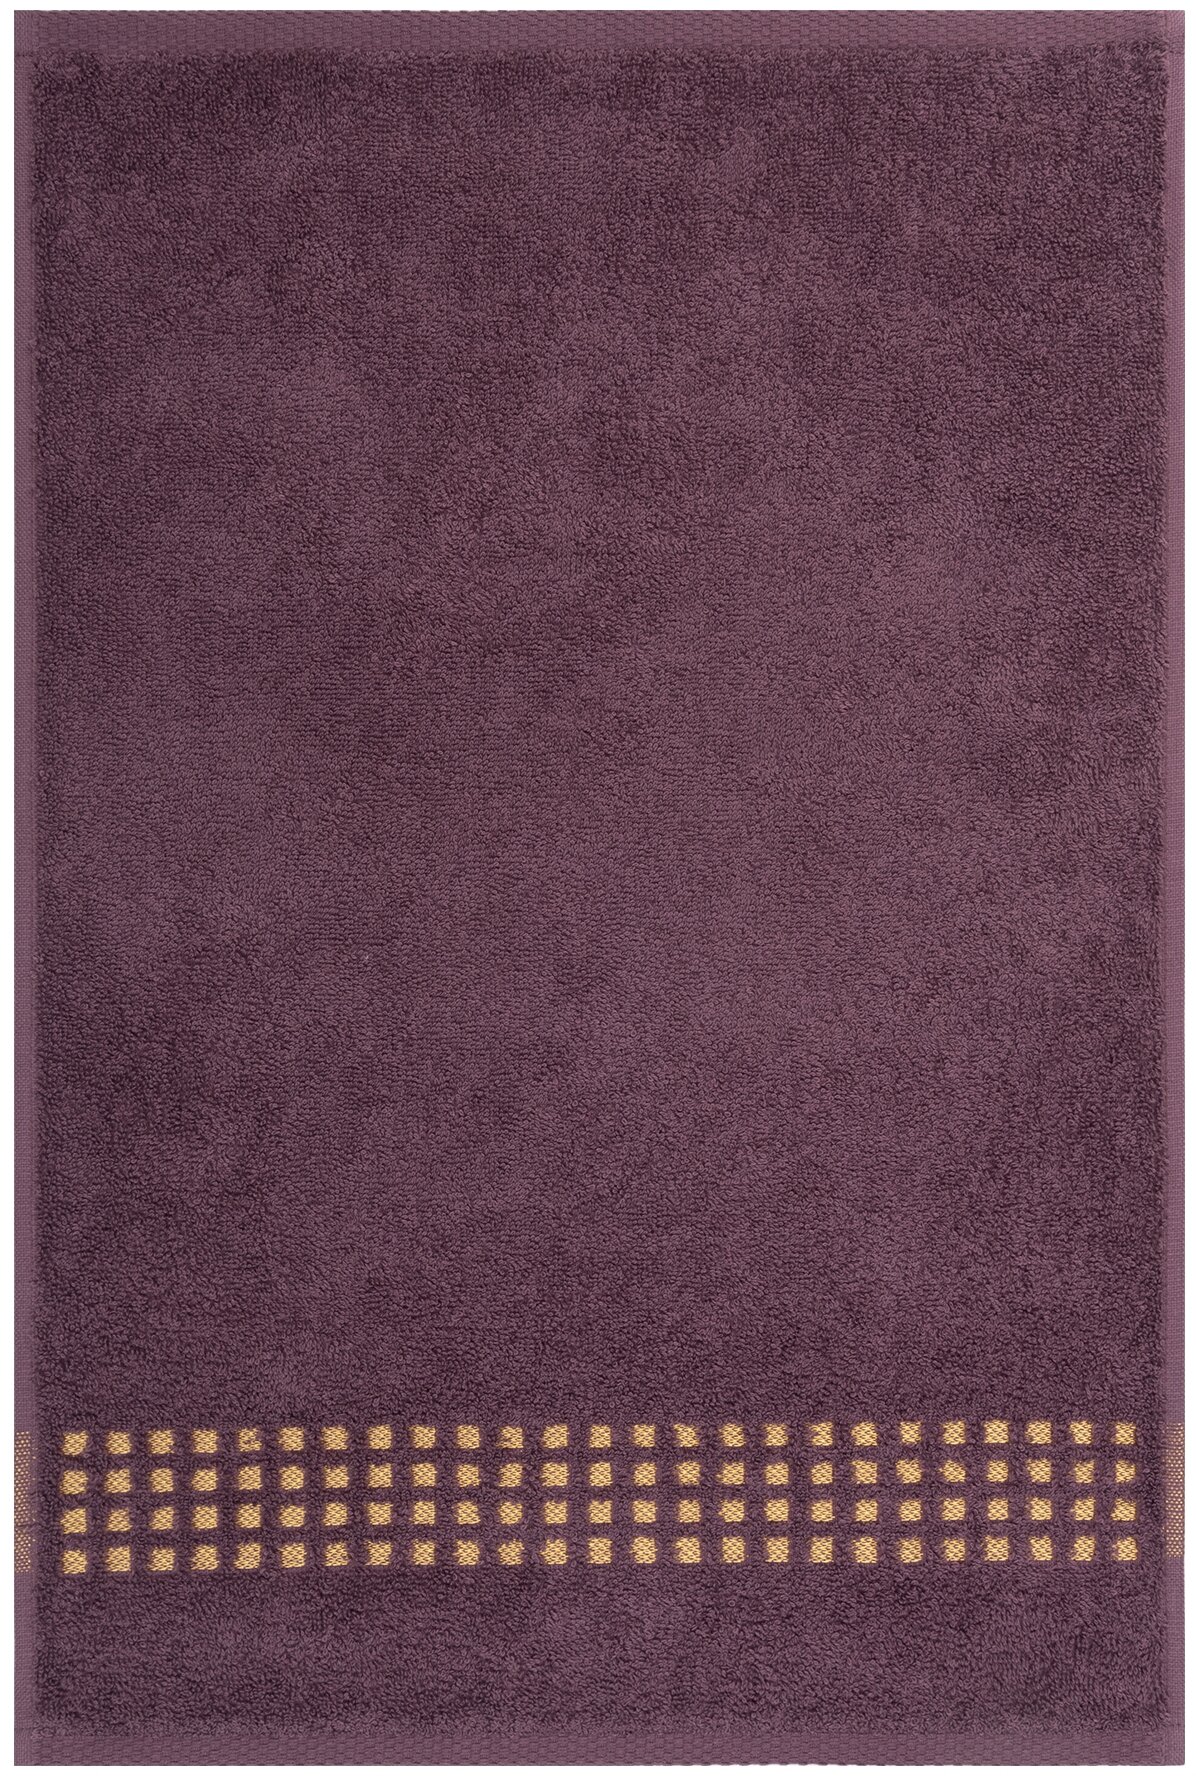 Салфетка махровая, полотенце для лица и рук, Донецкая мануфактура,Graph, цвет:сиреневый 40Х60 см,100% хлопок - фотография № 1